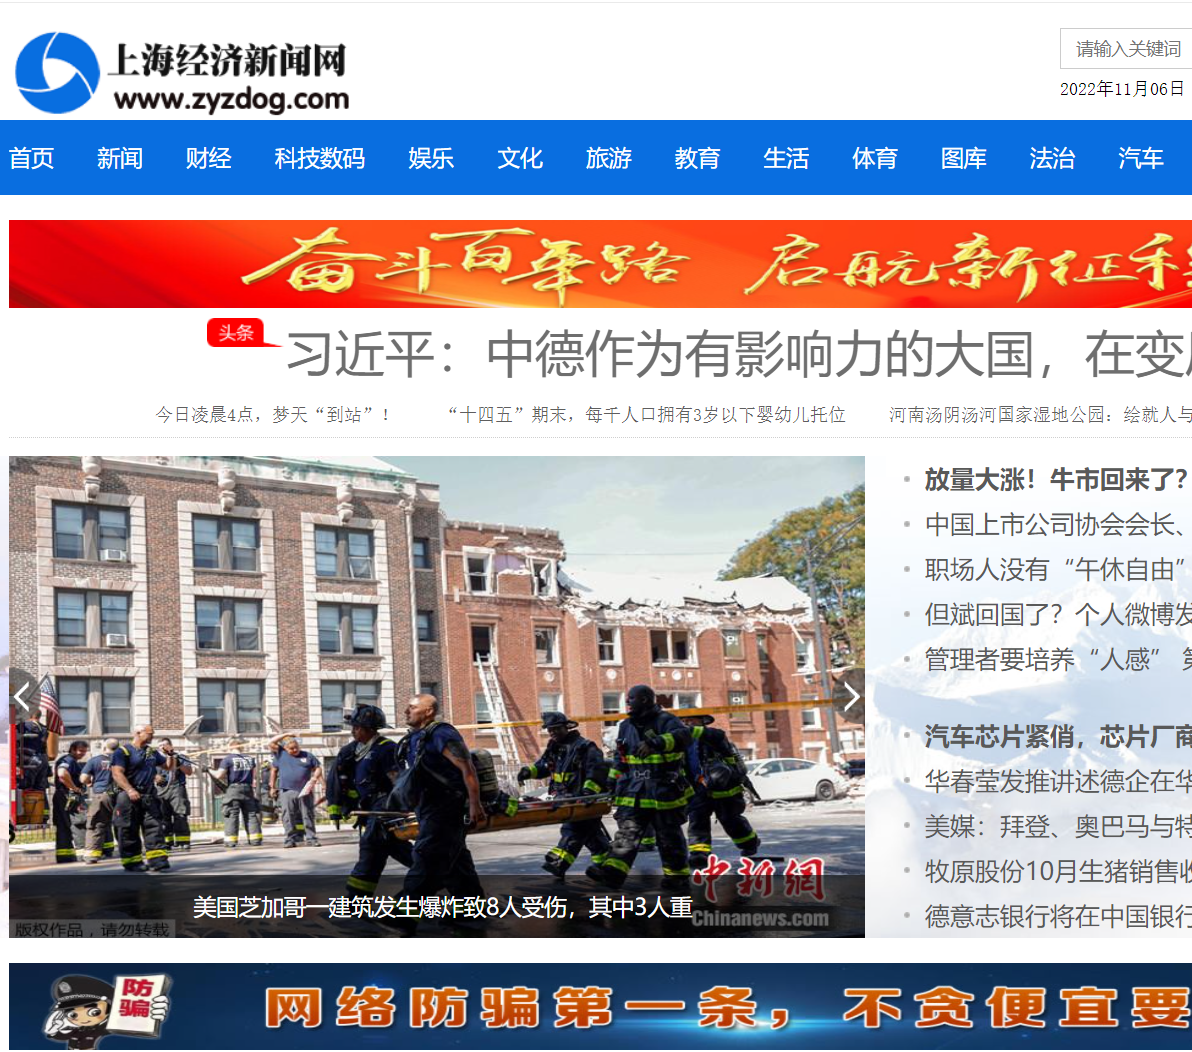 “上海经济新闻网”财经资讯,国内外最新综合资讯分享平台